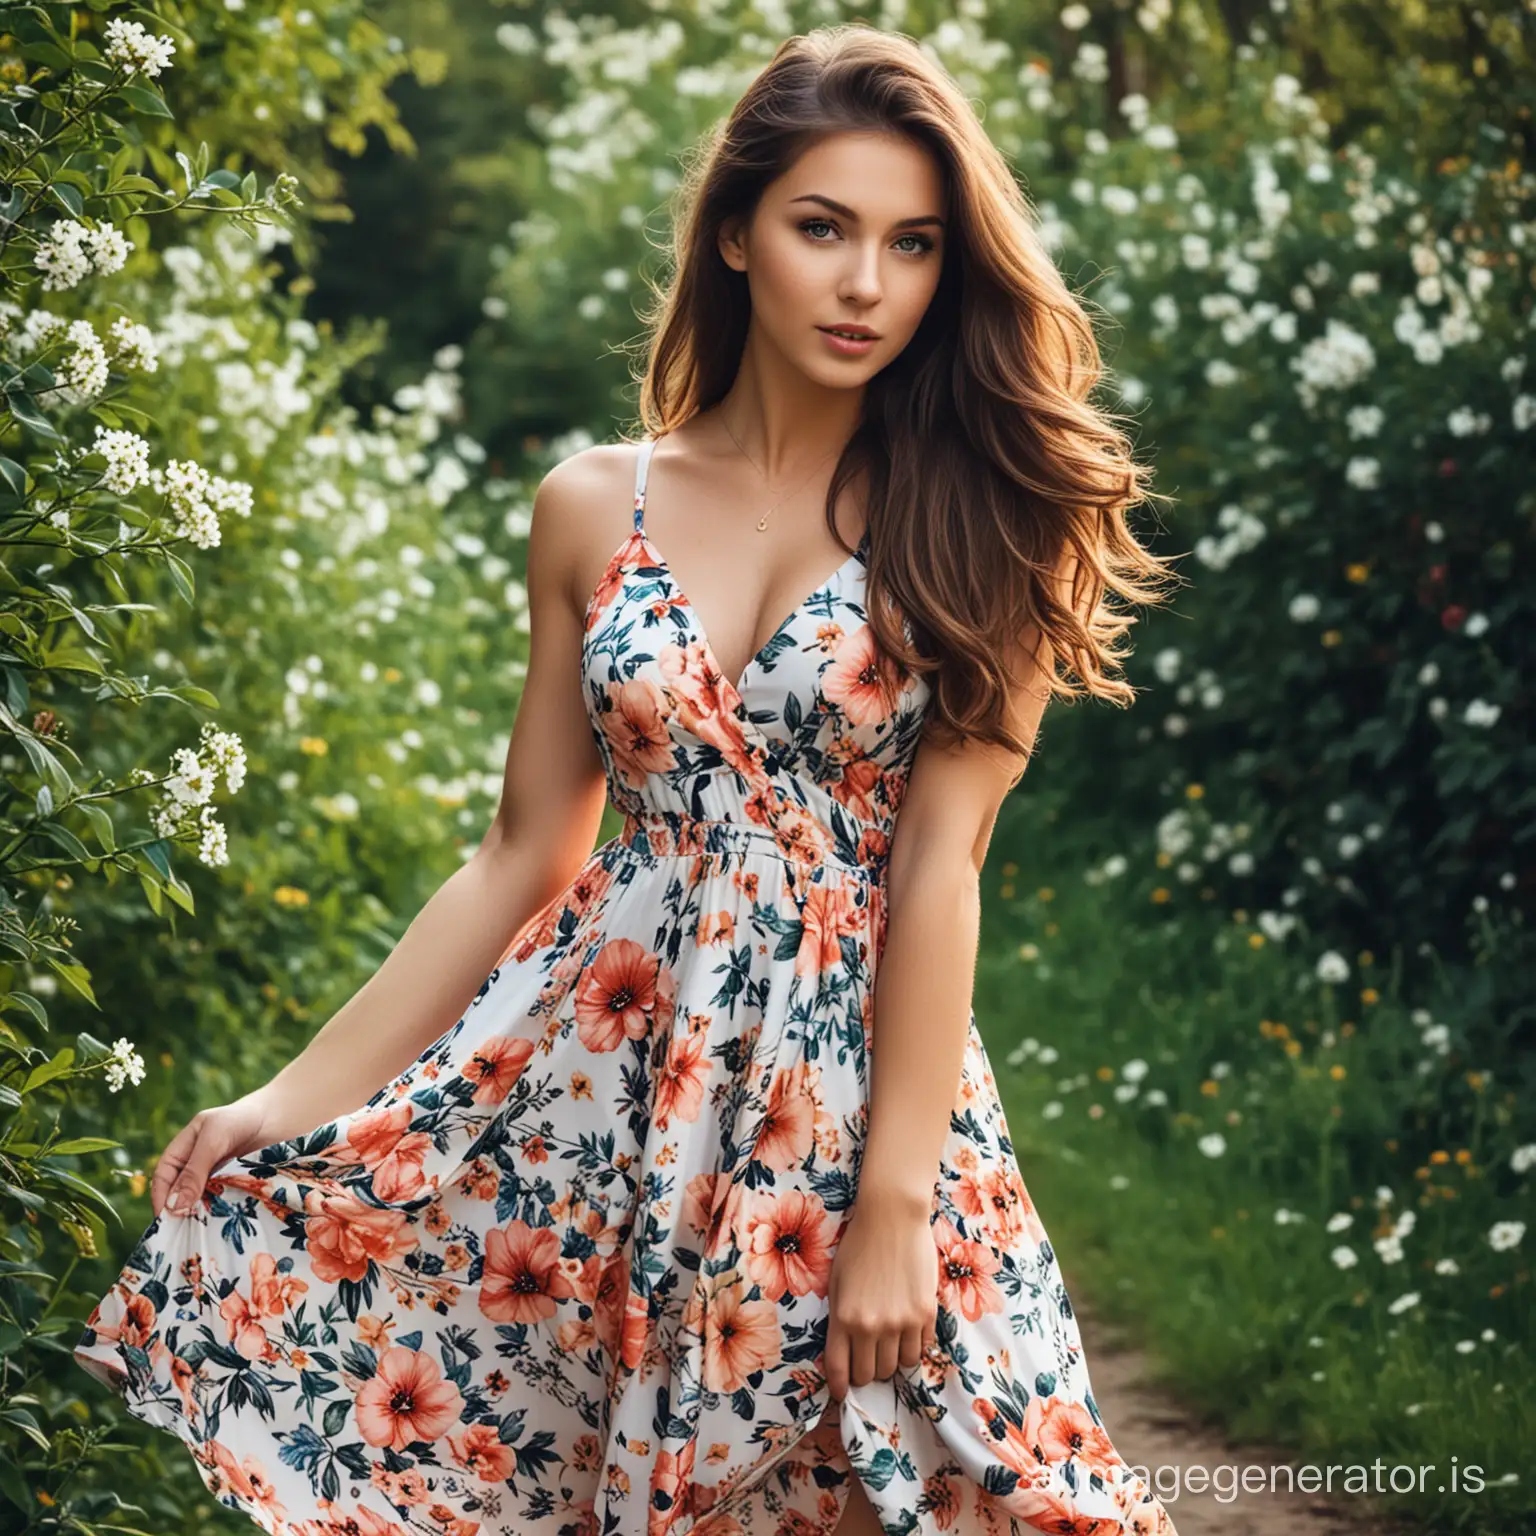 Floral-Dress-Girl-in-Serene-Garden-Setting